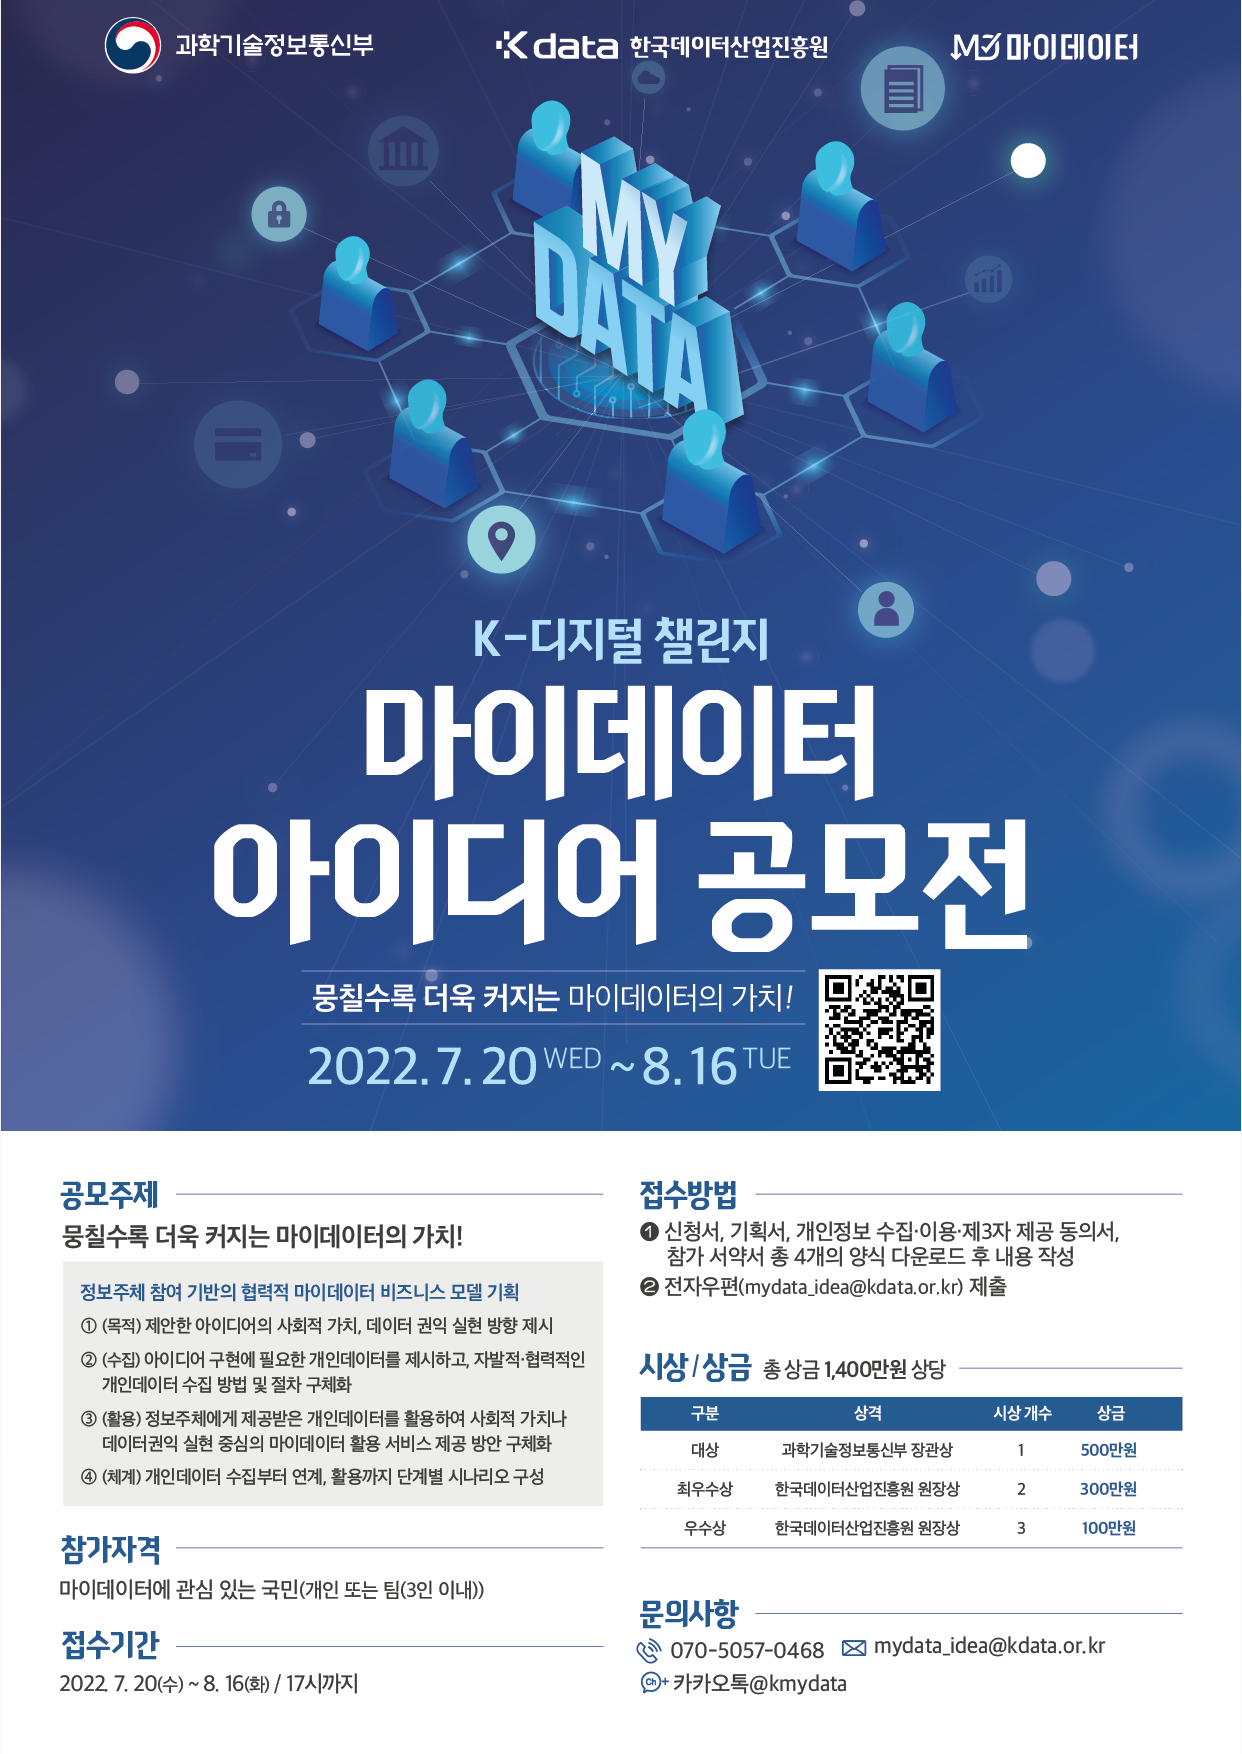  K-디지털 챌린지 : 2022년 마이데이터 아이디어 공모전 포스터